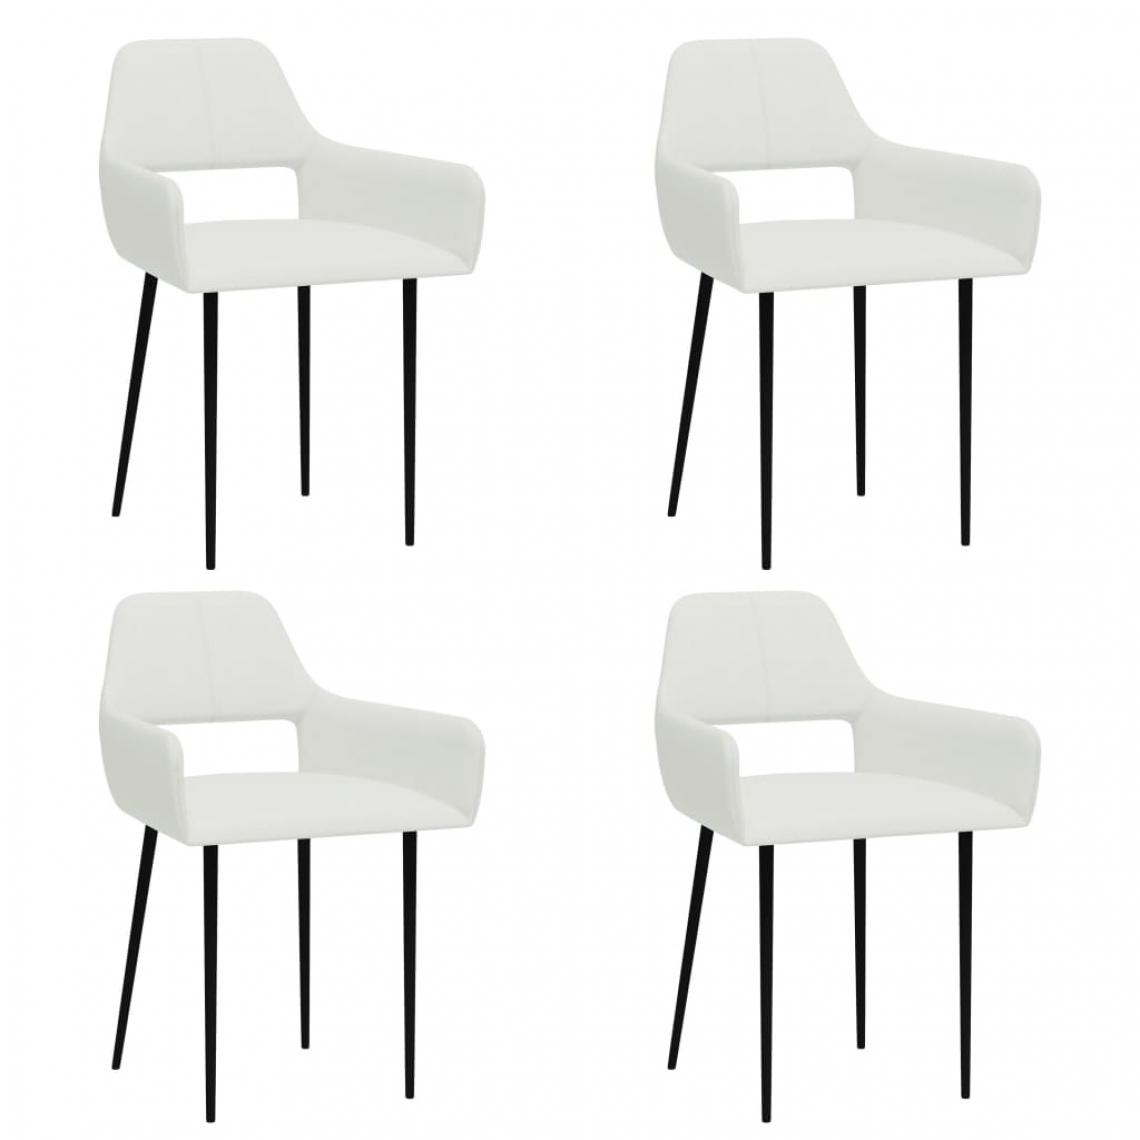 Icaverne - Chic Fauteuils et chaises selection Bichkek Chaises de salle à manger 4 pcs Blanc Tissu - Chaises